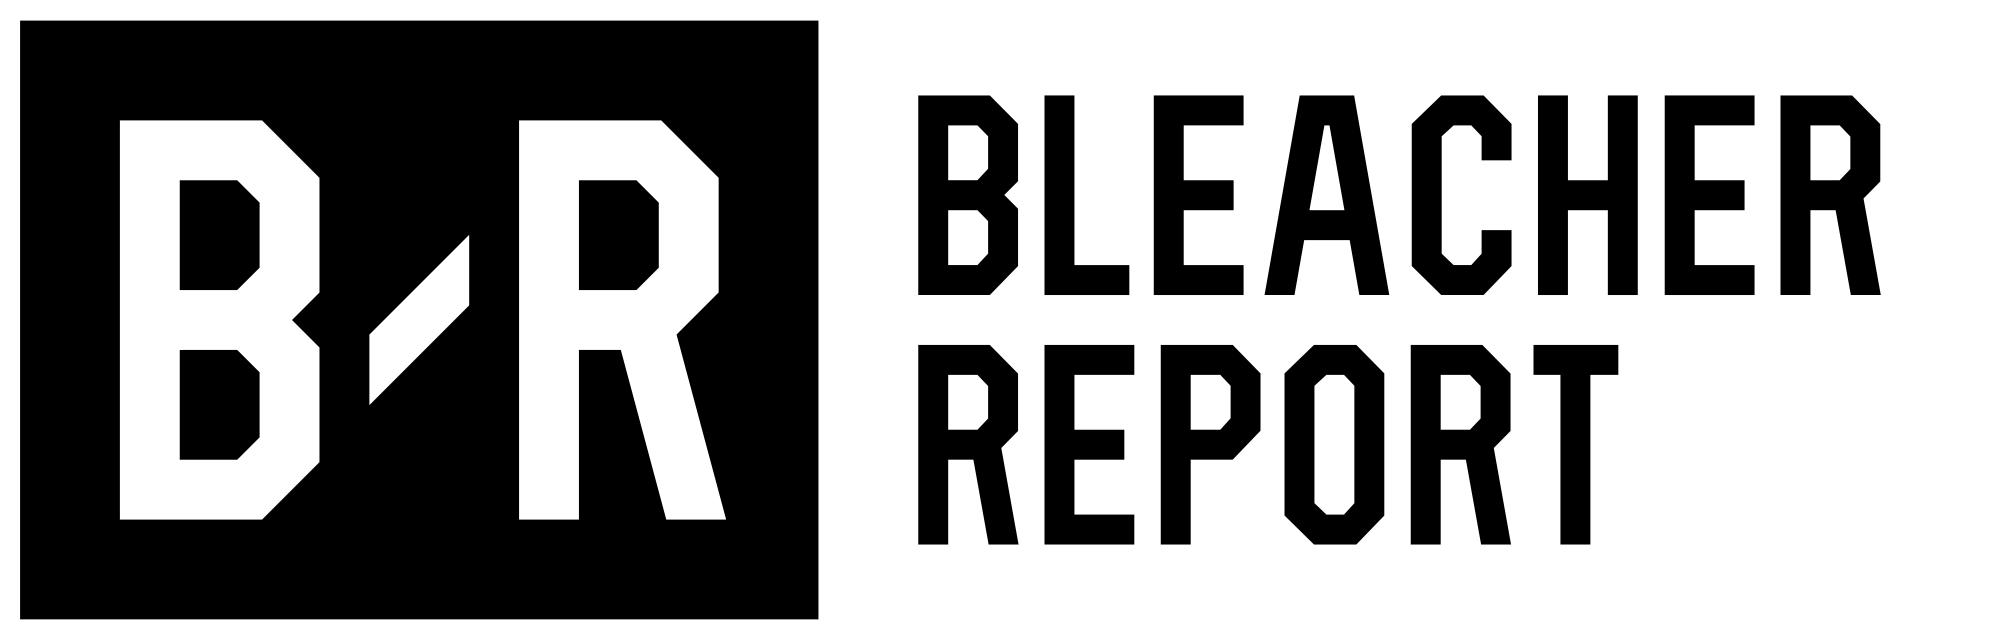 Report Logo - Bleacher Report logo.svg